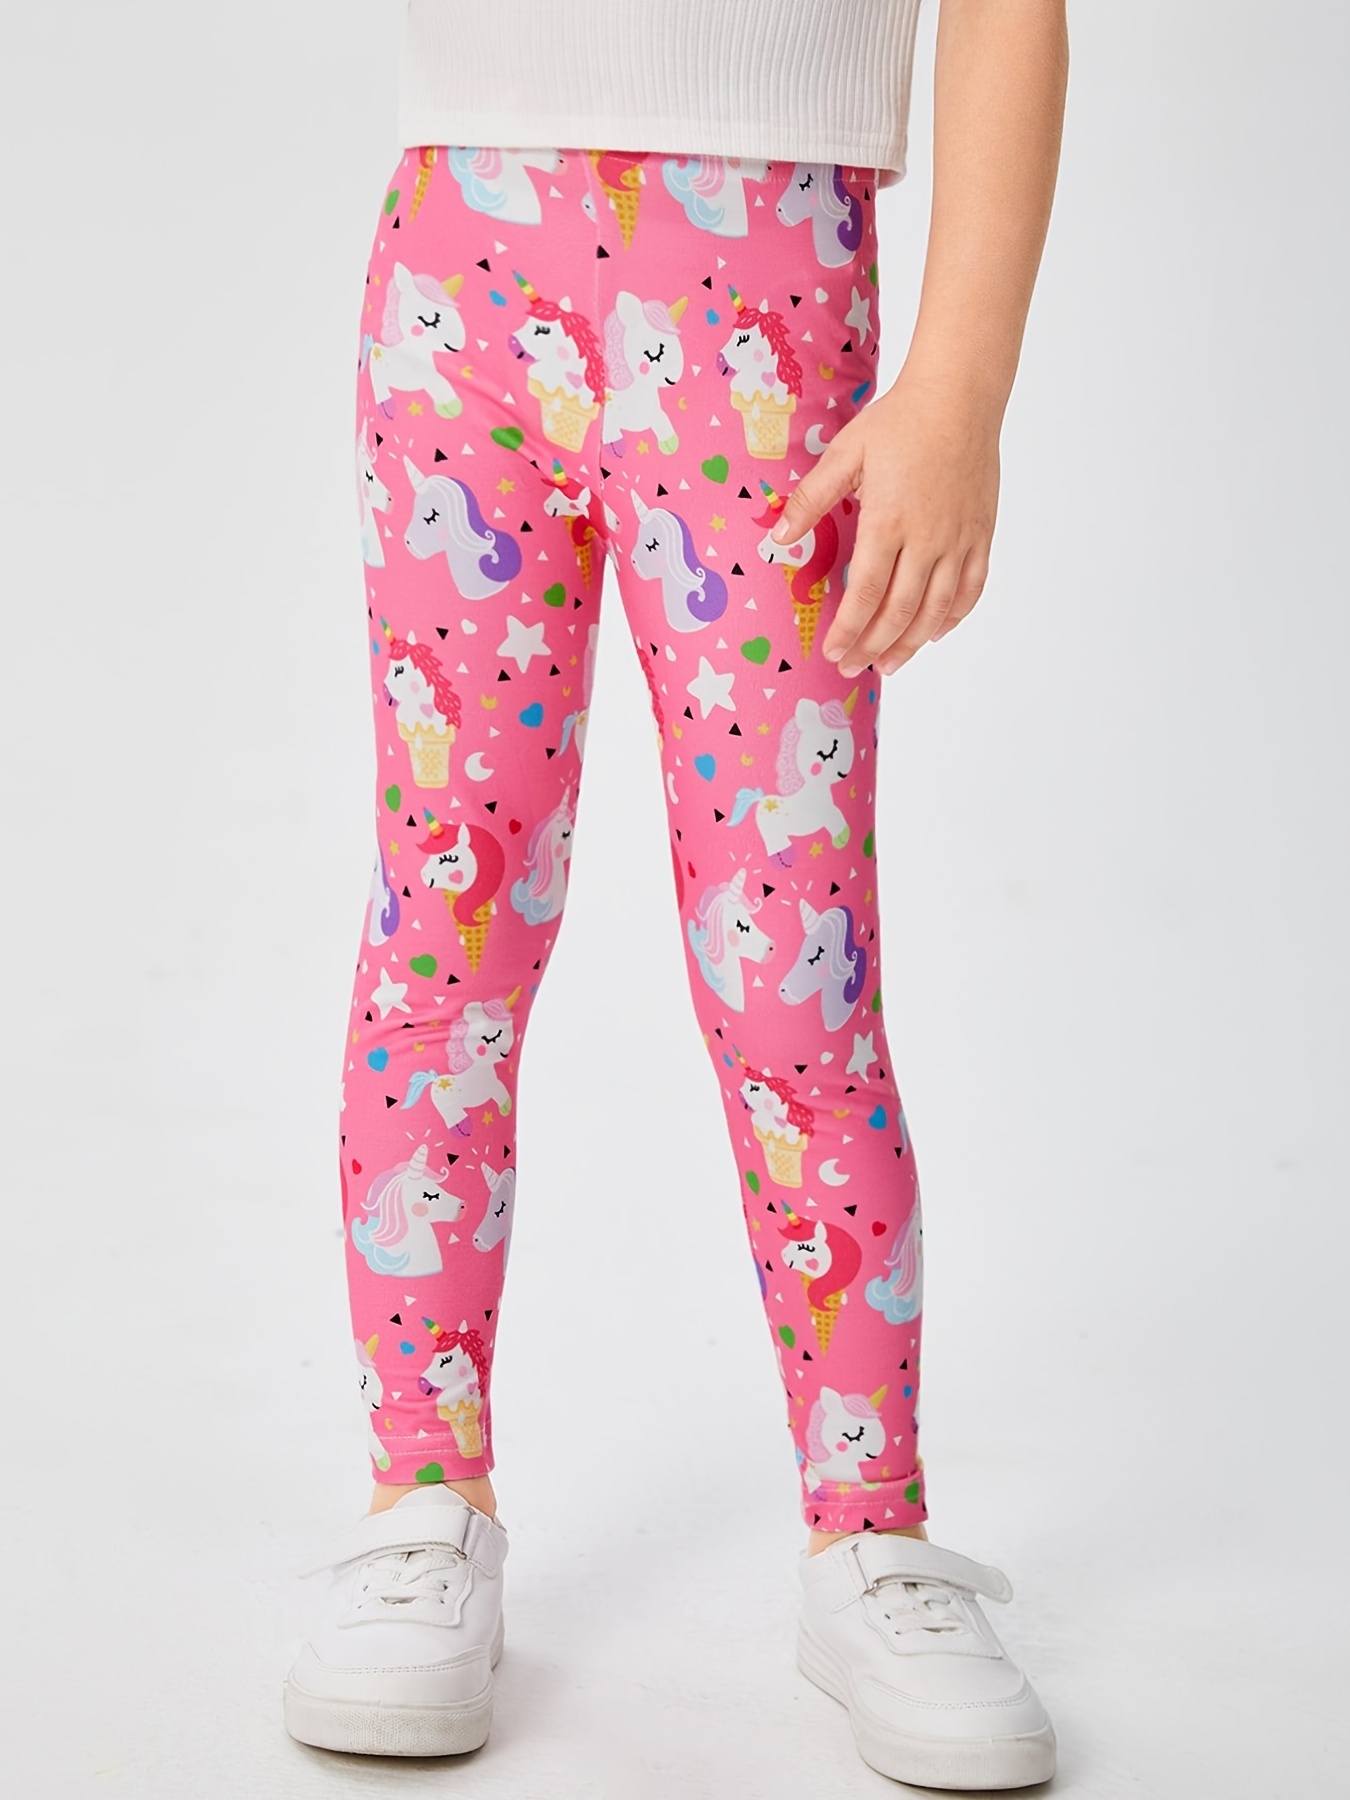 Diseño de leggings de mujer con motivos: unicornio En las compras